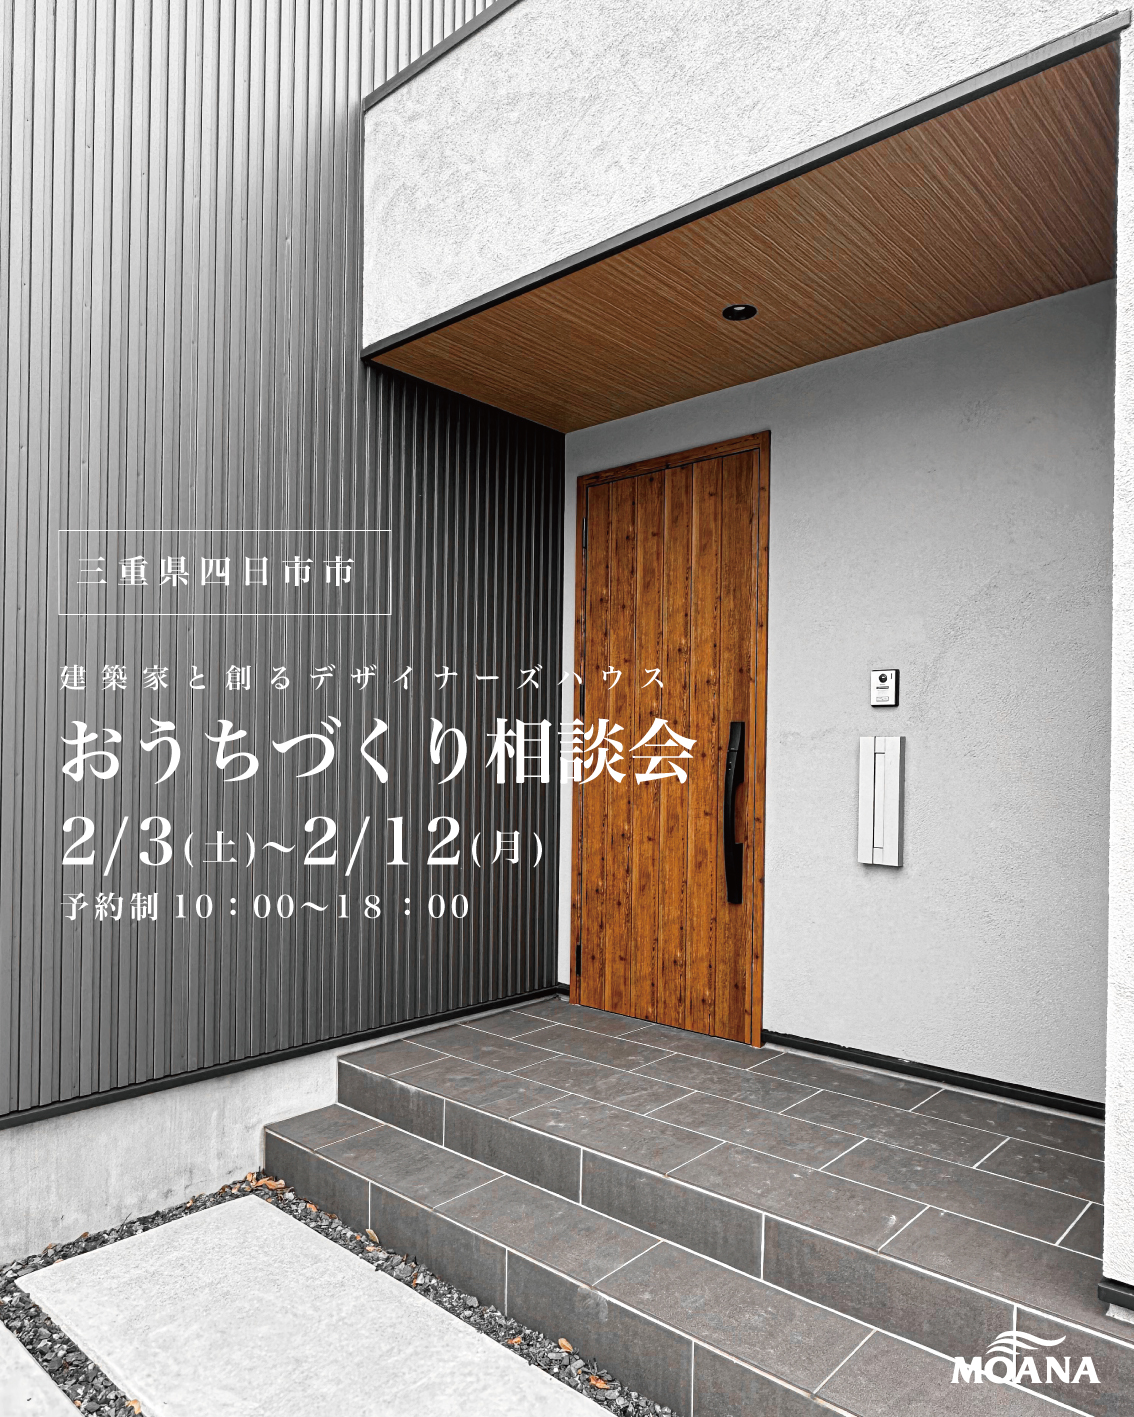 三重県四日市市で建築家と創るデザイナーズハウス「 おしゃれな家づくり相談会」を開催します🎉